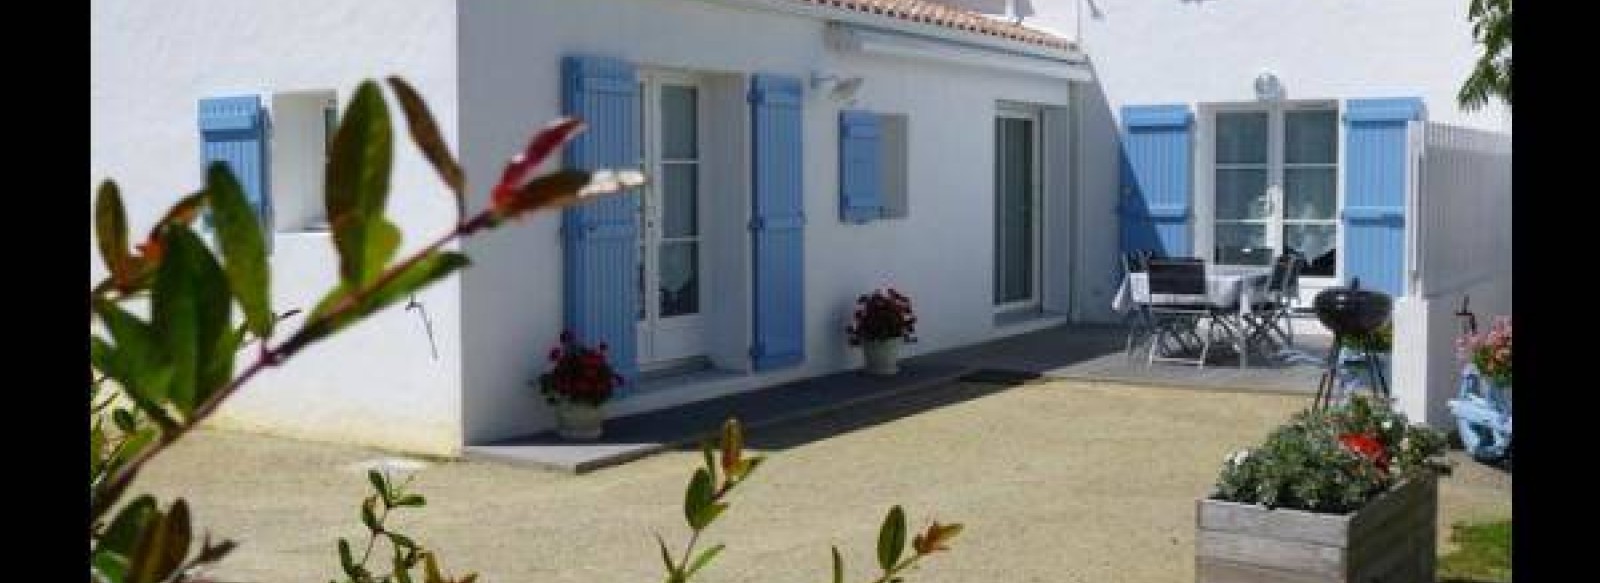 Maison recente situee a 50 m de la mer,  quartier du Petit Vieil a Noirmoutier en l'ile